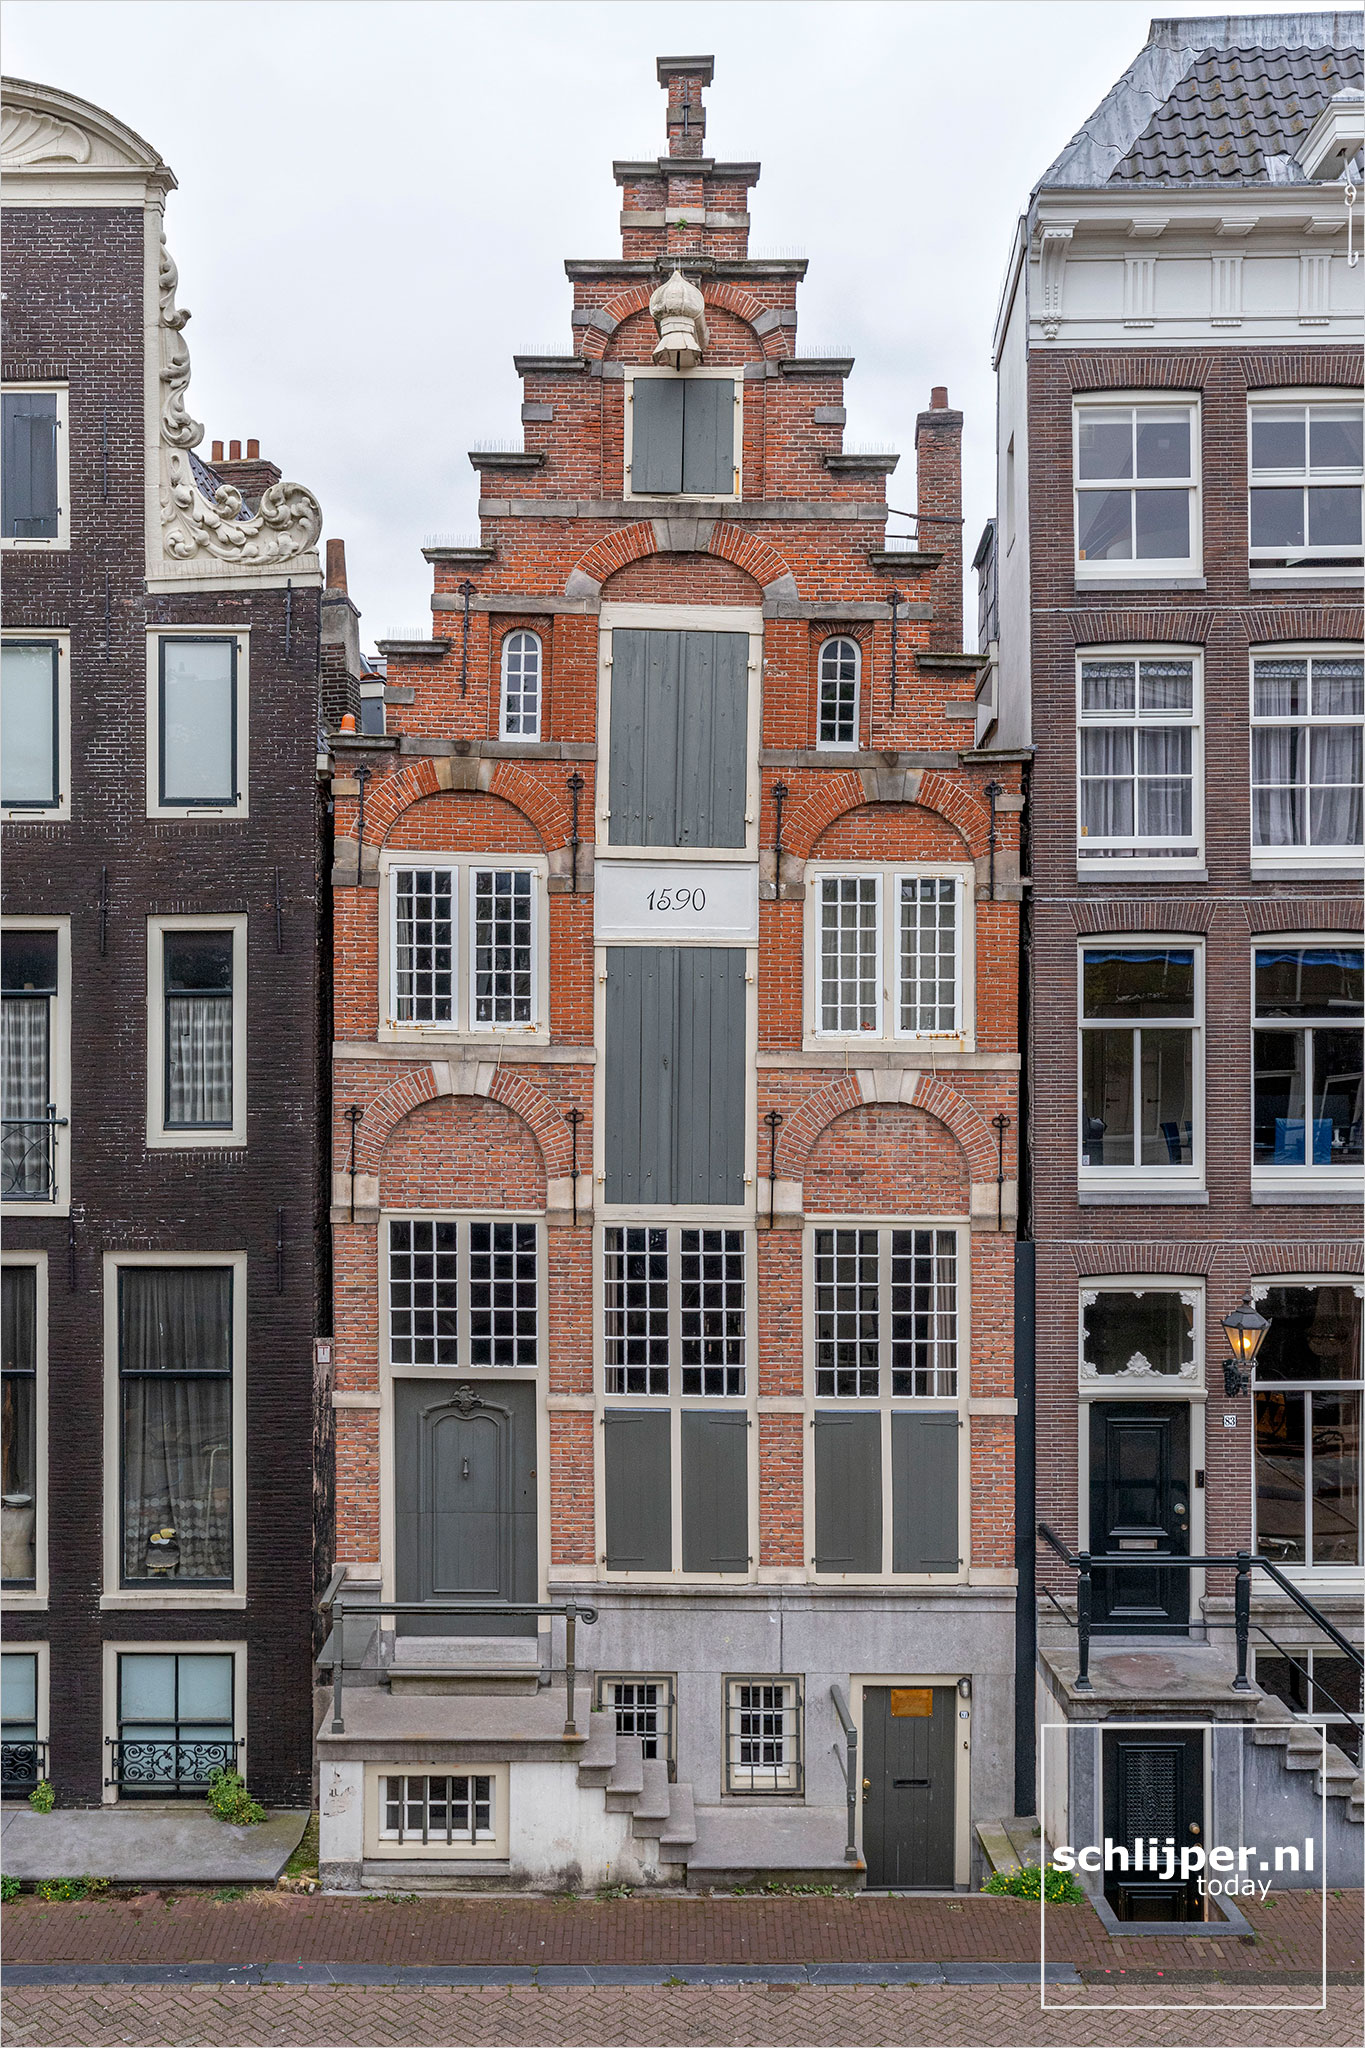 The Netherlands, Amsterdam, 2 september 2021